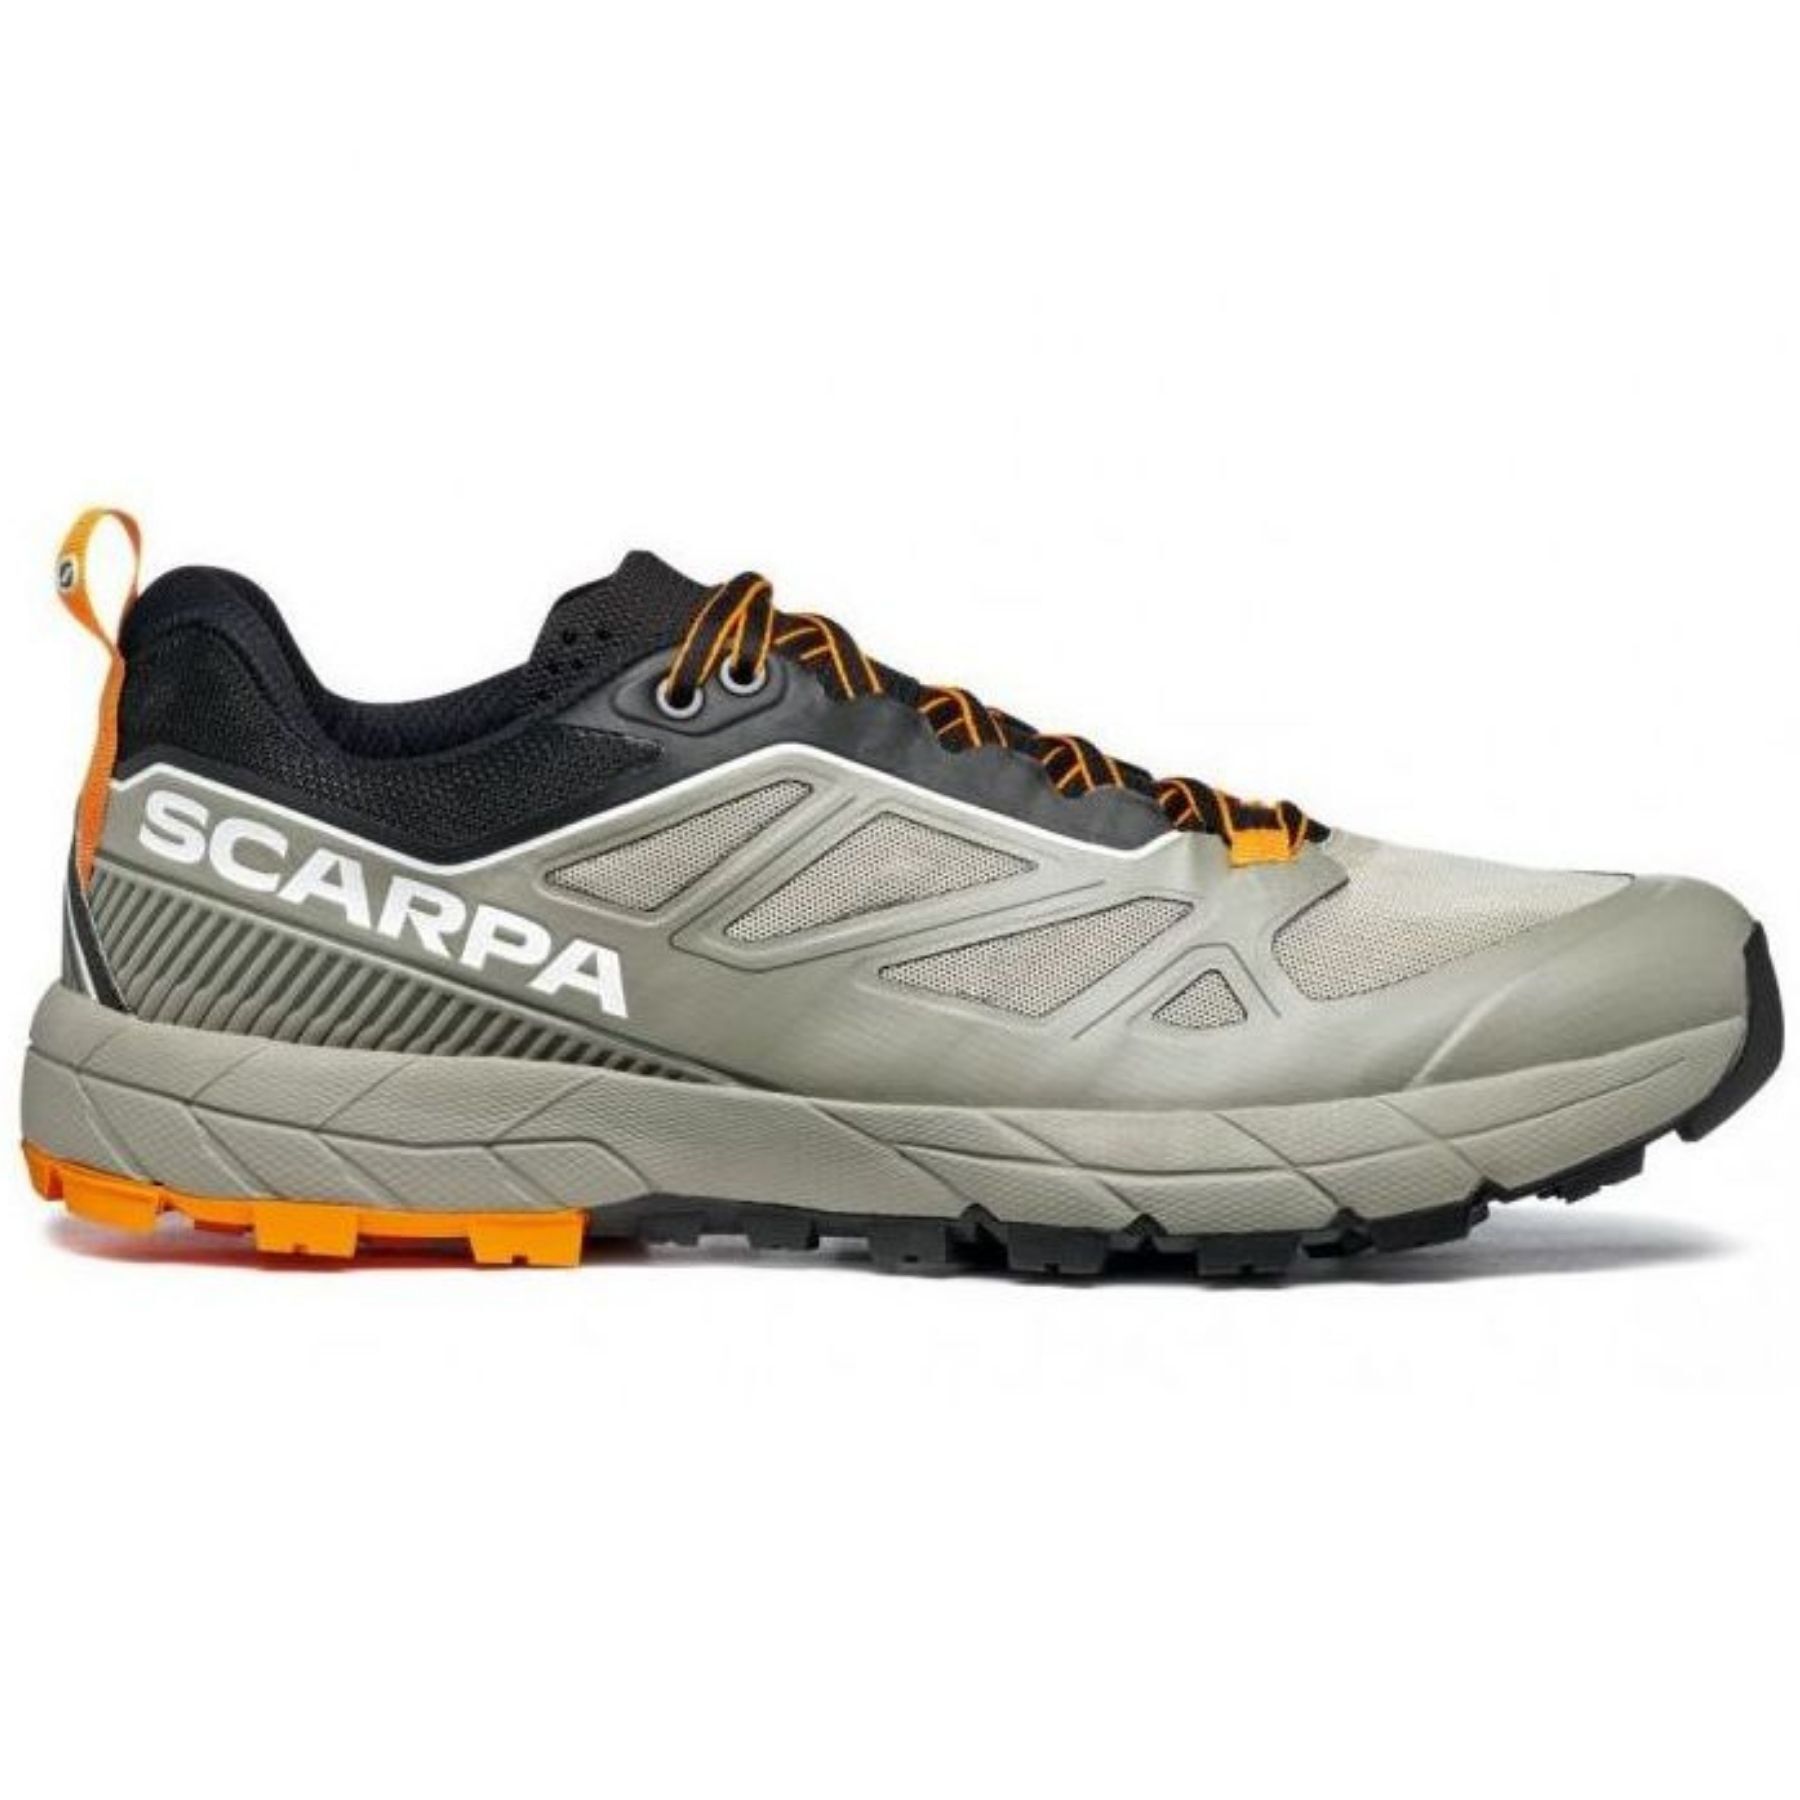 Scarpa Rapid - Approach shoes - Men's